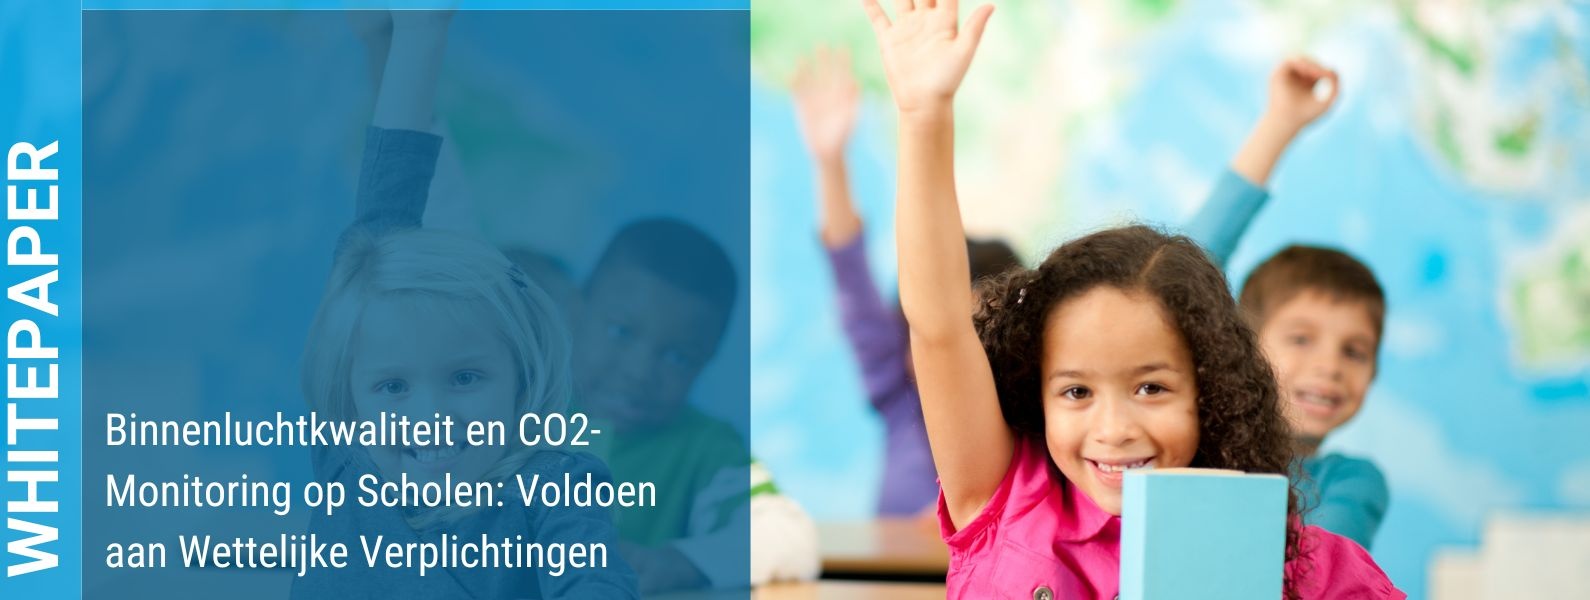 Binnenluchtkwaliteit en CO2-Monitoring op Scholen: Voldoen aan Wettelijke Verplichtingen